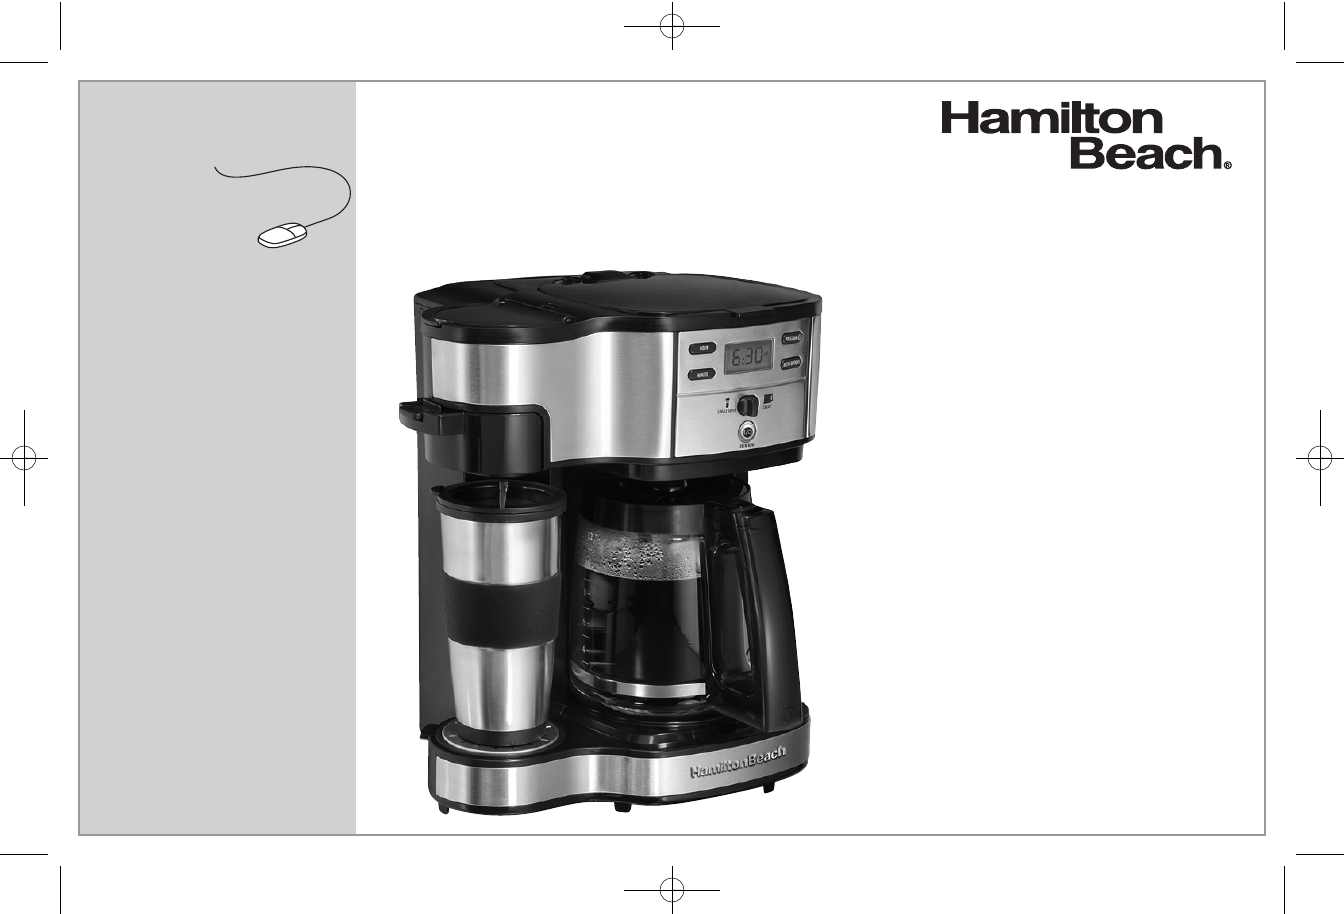 Hamilton beach dual coffee maker